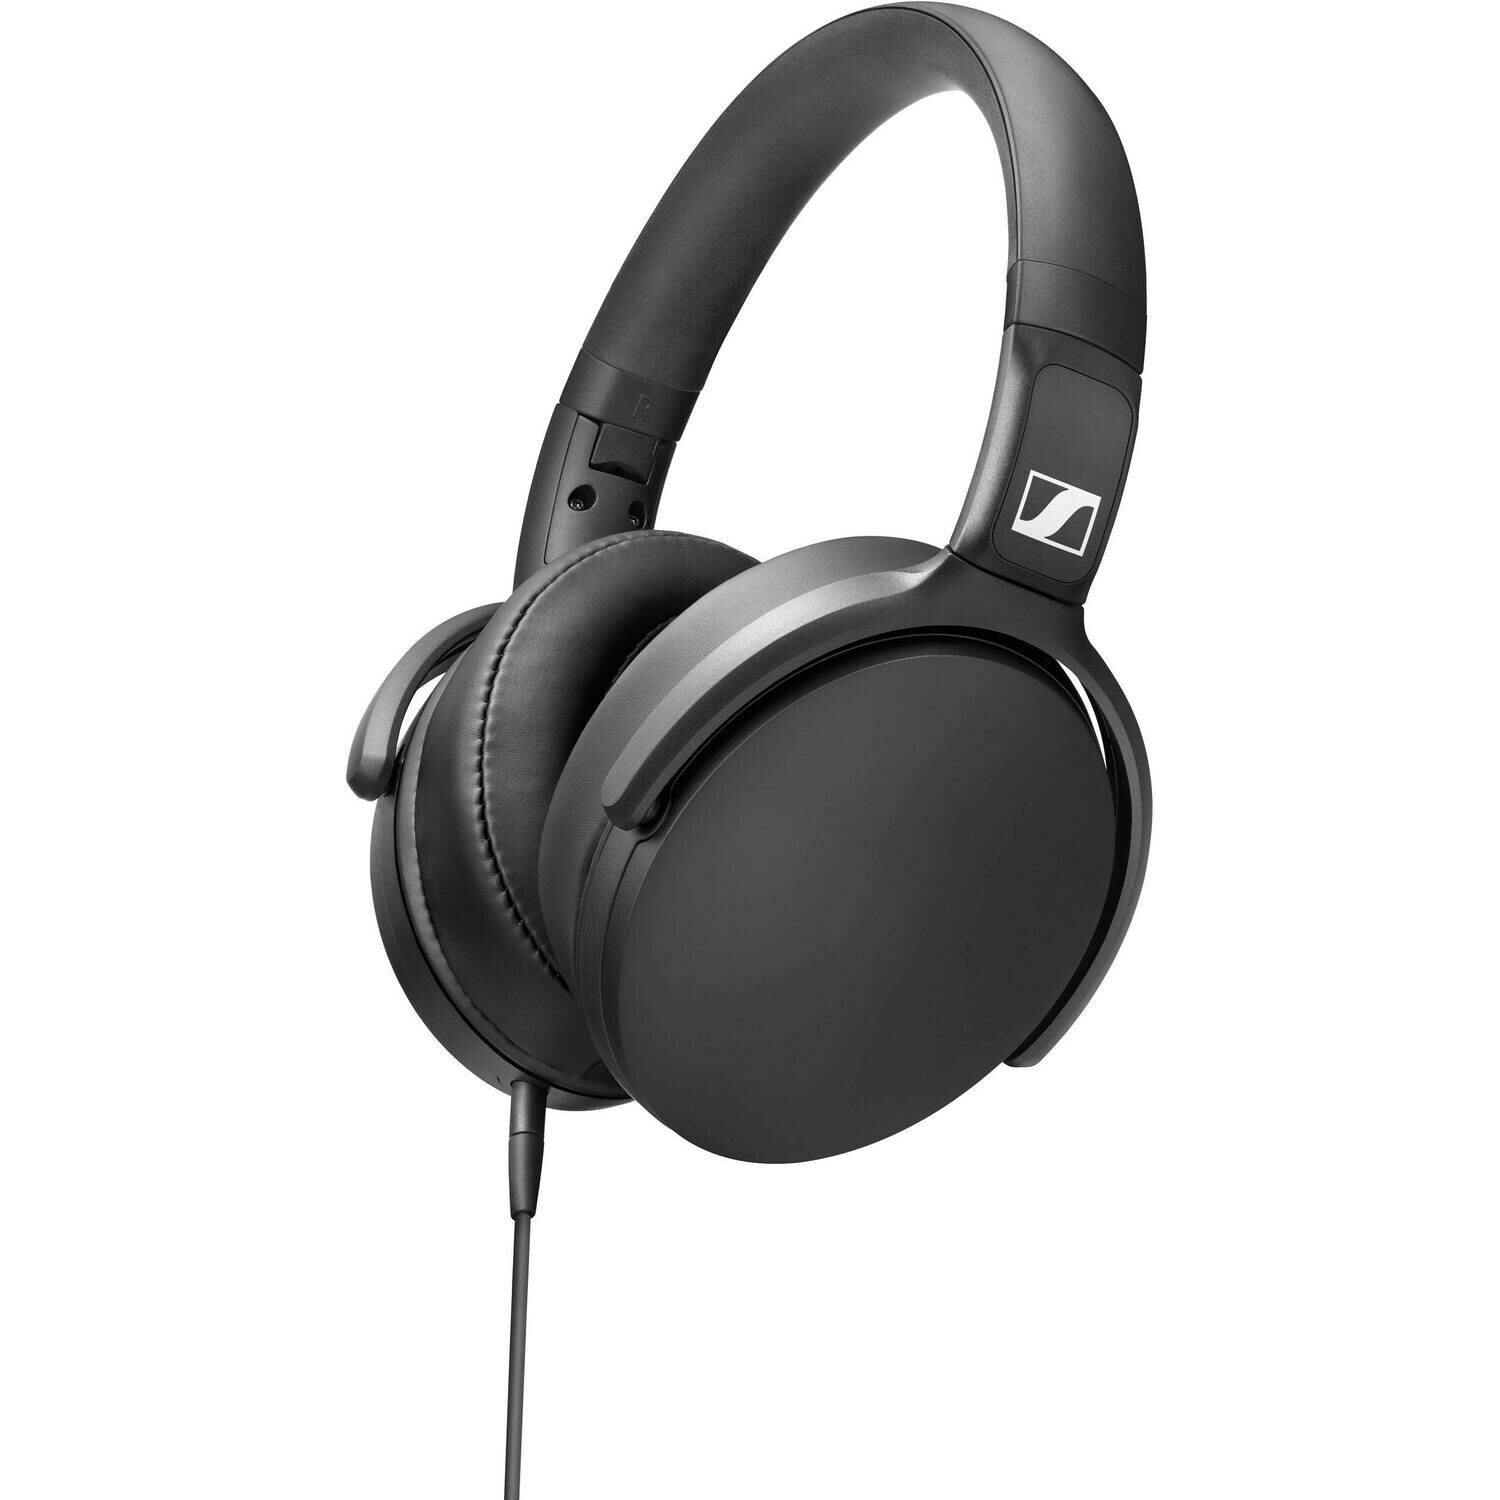 Sennheiser HD 400S Over-Ear Headphones
#SEHD400S MFR #508598